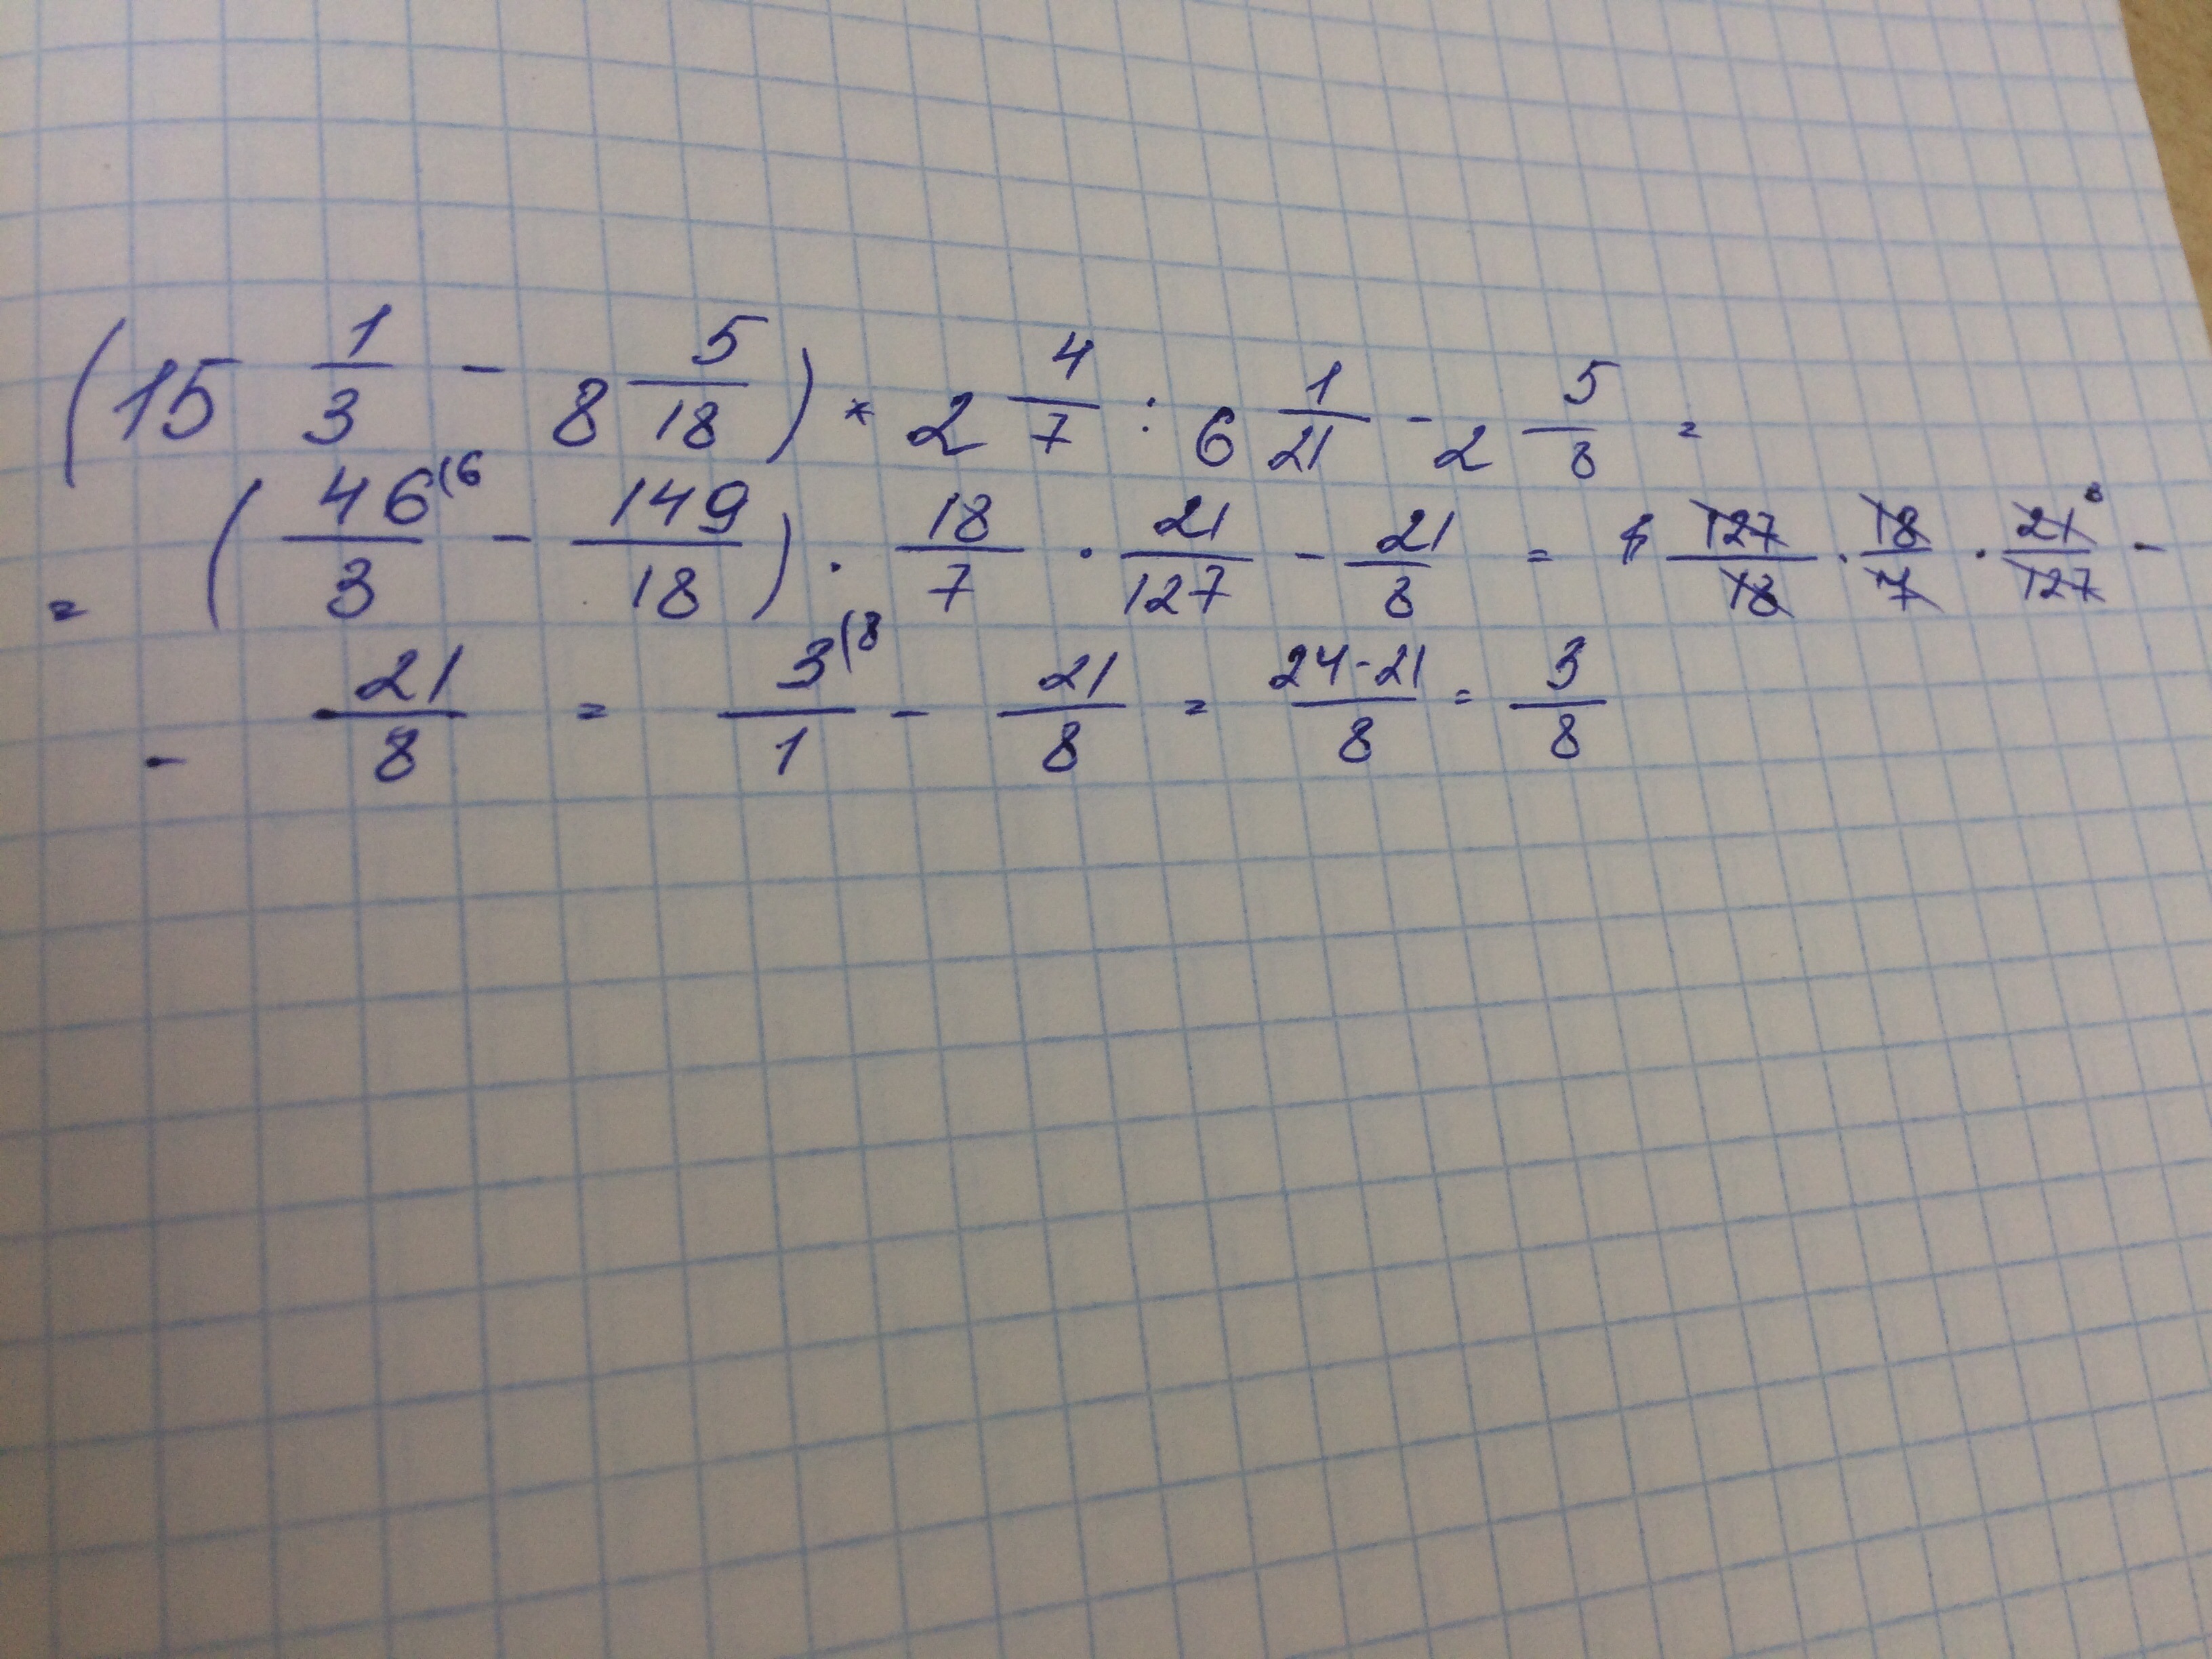 3 11 15 17 разделить 11 34. Решить пример 15 целых 1/2. Реши пример :(2 целых1/6 -3 целых1/4): 2 целых 3/5 + 2/3 • 2 целых 1/4 - 5 целых 1/6. 2целых7. Реши пример 9 разделить на 2 целых 2/5.